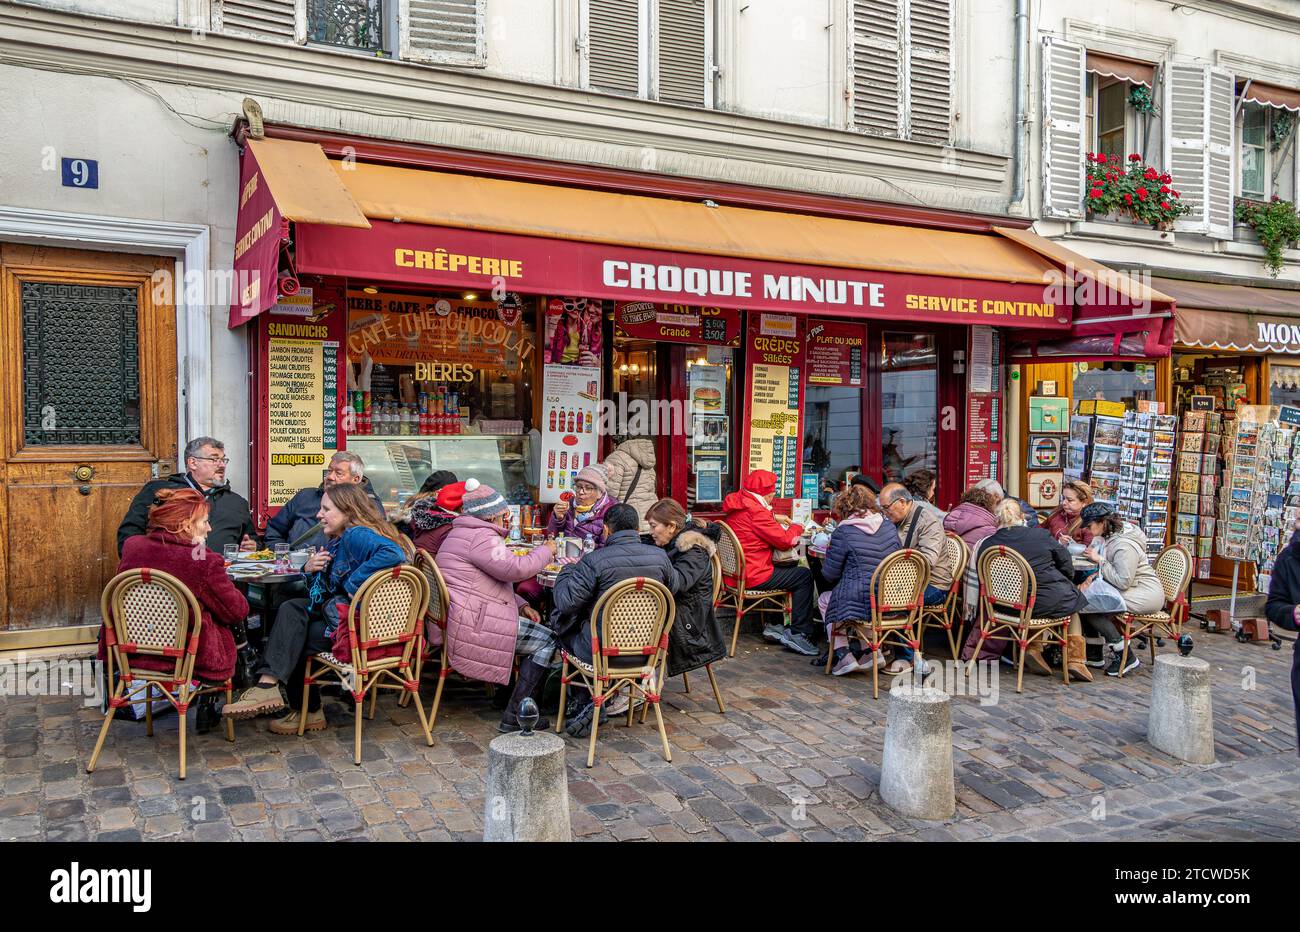 Les gens assis à déguster un repas au croque minute, un restaurant français à Montmartre dans hte 18e arronndissnt de Paris, France Banque D'Images